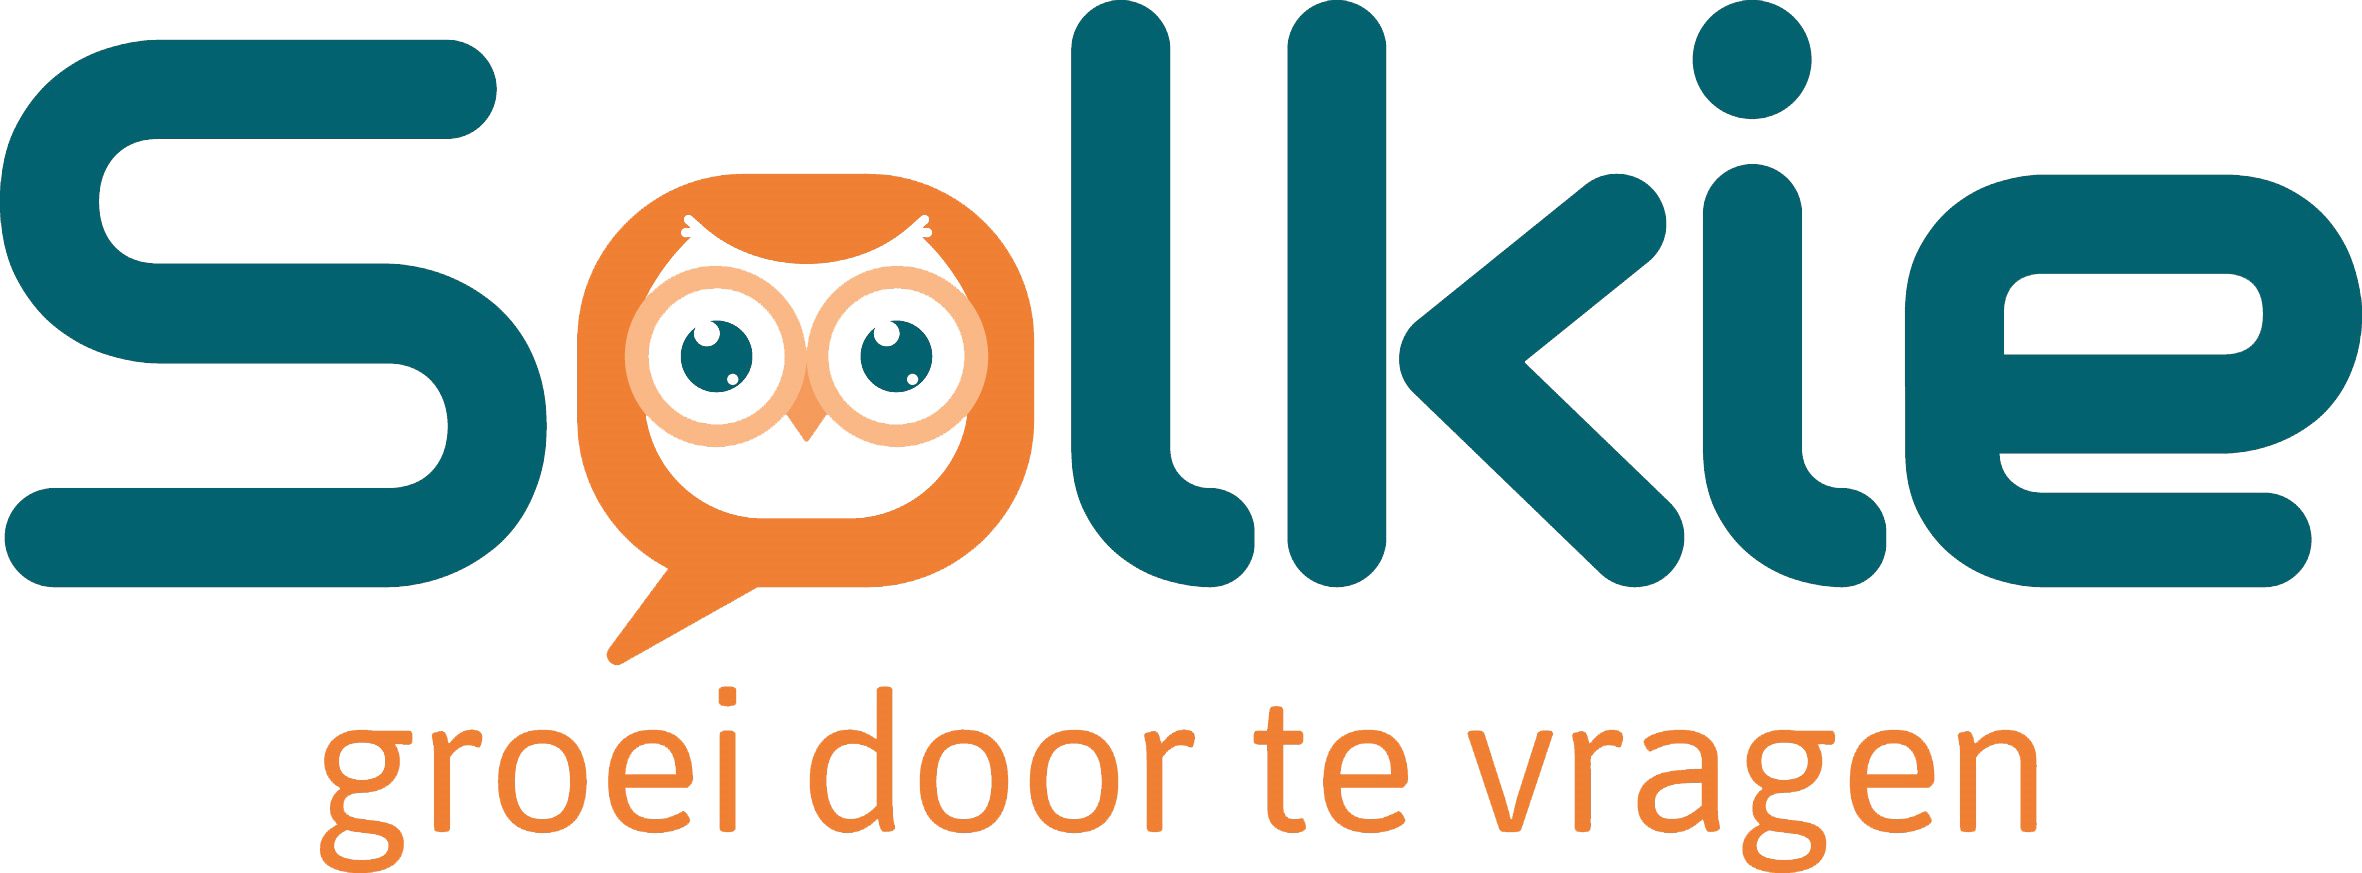 Solkie Logo, groei door te vragen